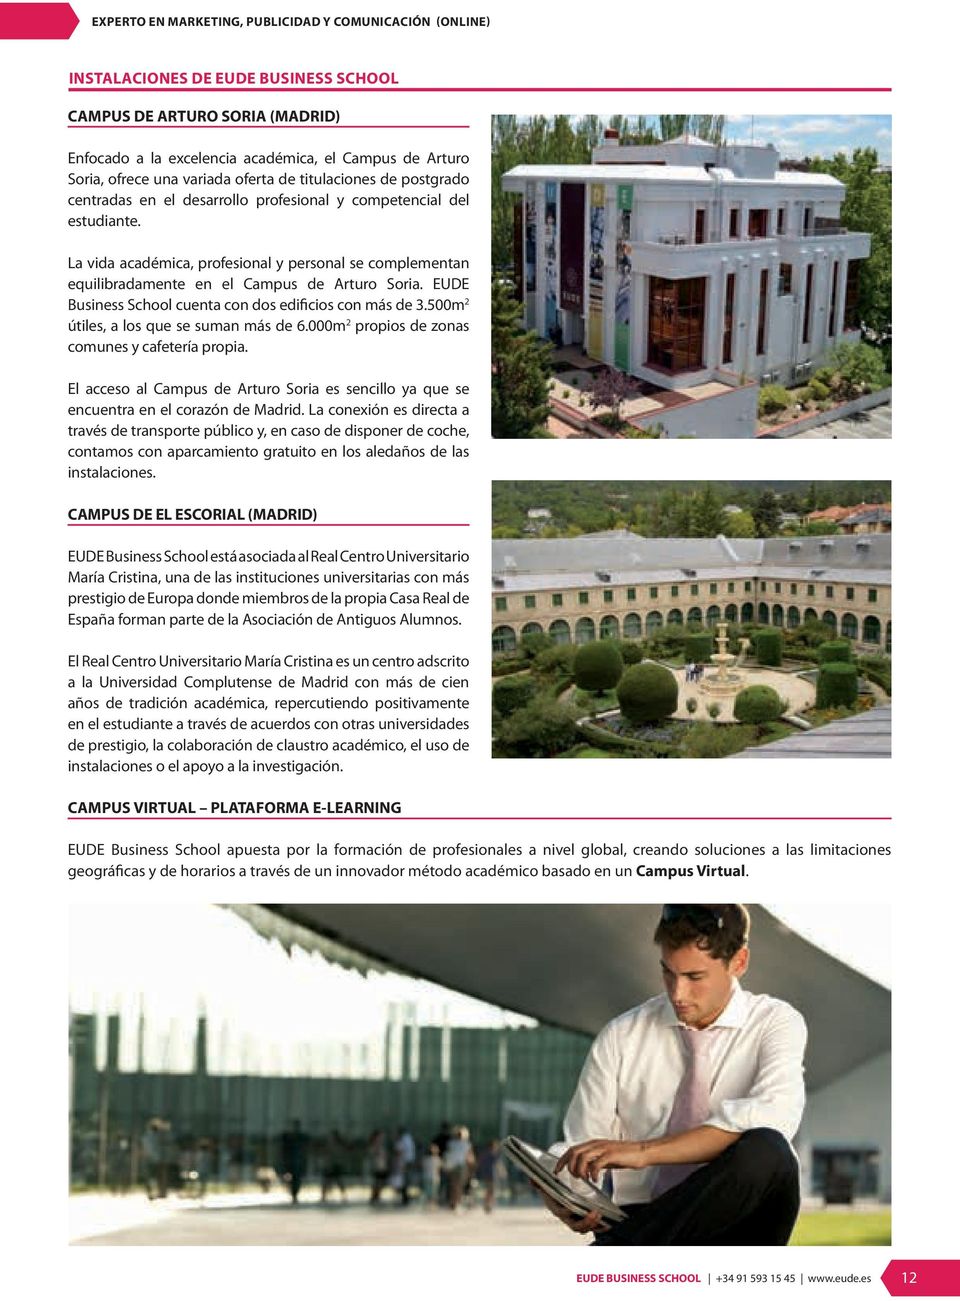 La vida académica, profesional y personal se complementan equilibradamente en el Campus de Arturo Soria. EUDE Business School cuenta con dos edificios con más de 3.